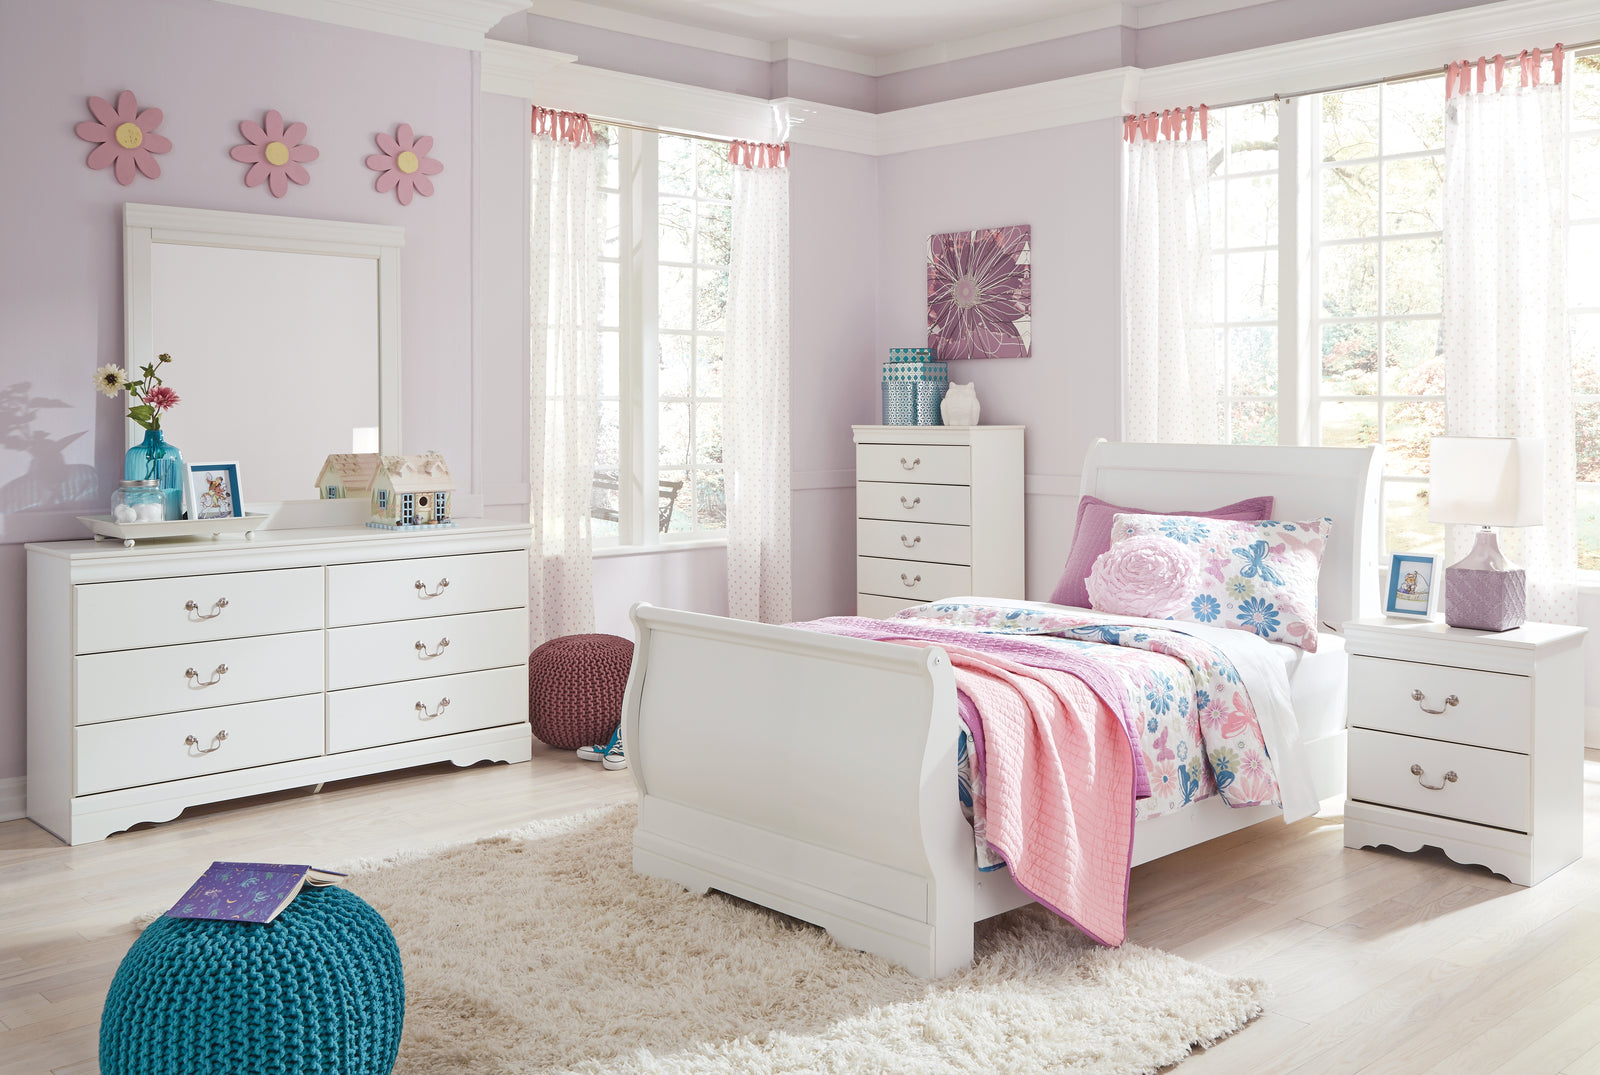 Anarasia White Sleigh Bedroom Set